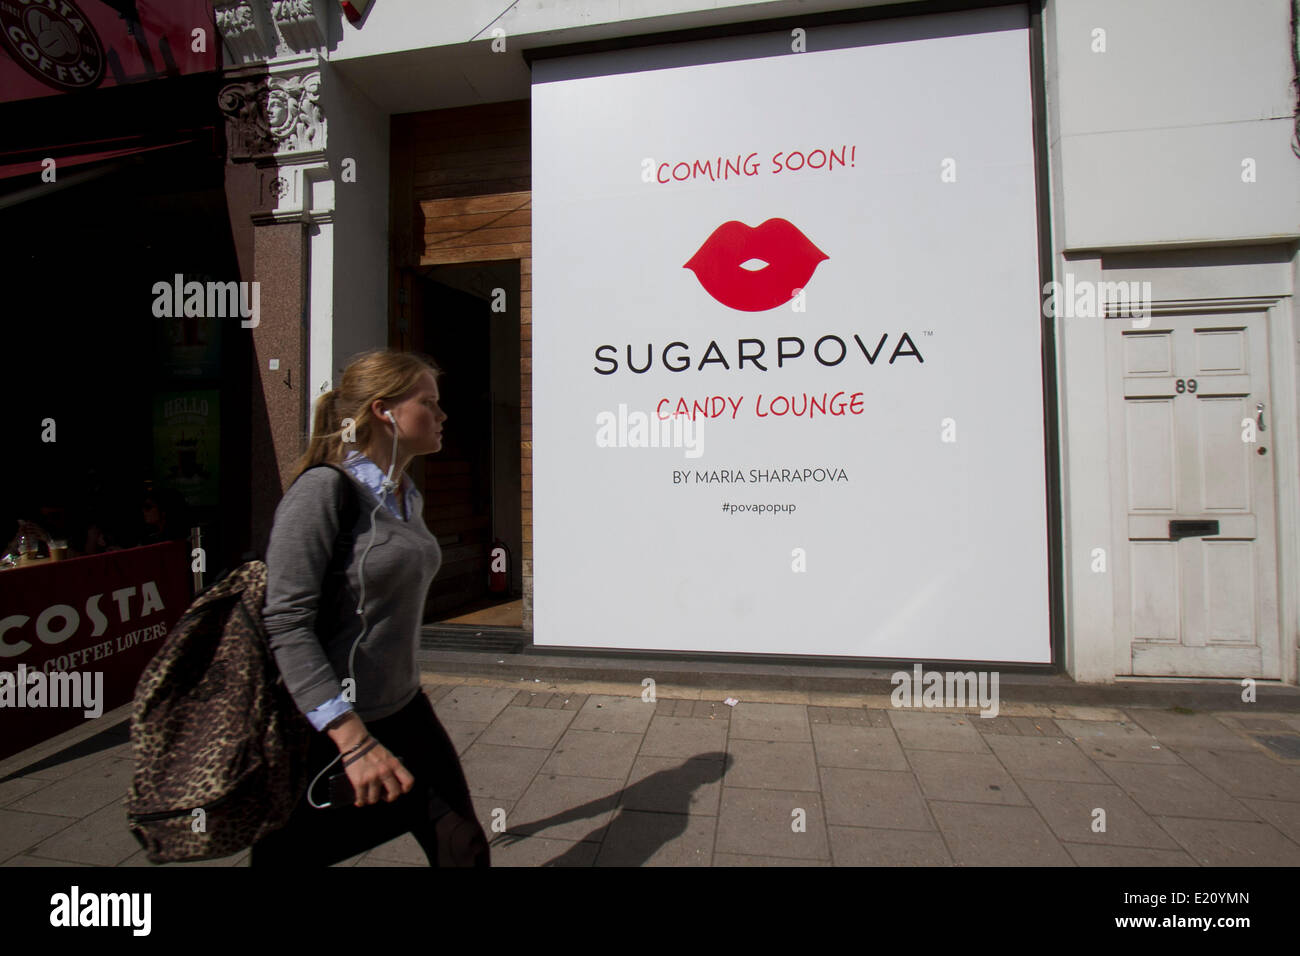 Wimbledon London UK. 12 juin 2014. Les travailleurs de mettre la touche finale au nouveau magasin de bonbons de Maria Sharapova nommée 'Sugarpova» avant l'ouverture de droits : amer ghazzal/Alamy Live News Banque D'Images